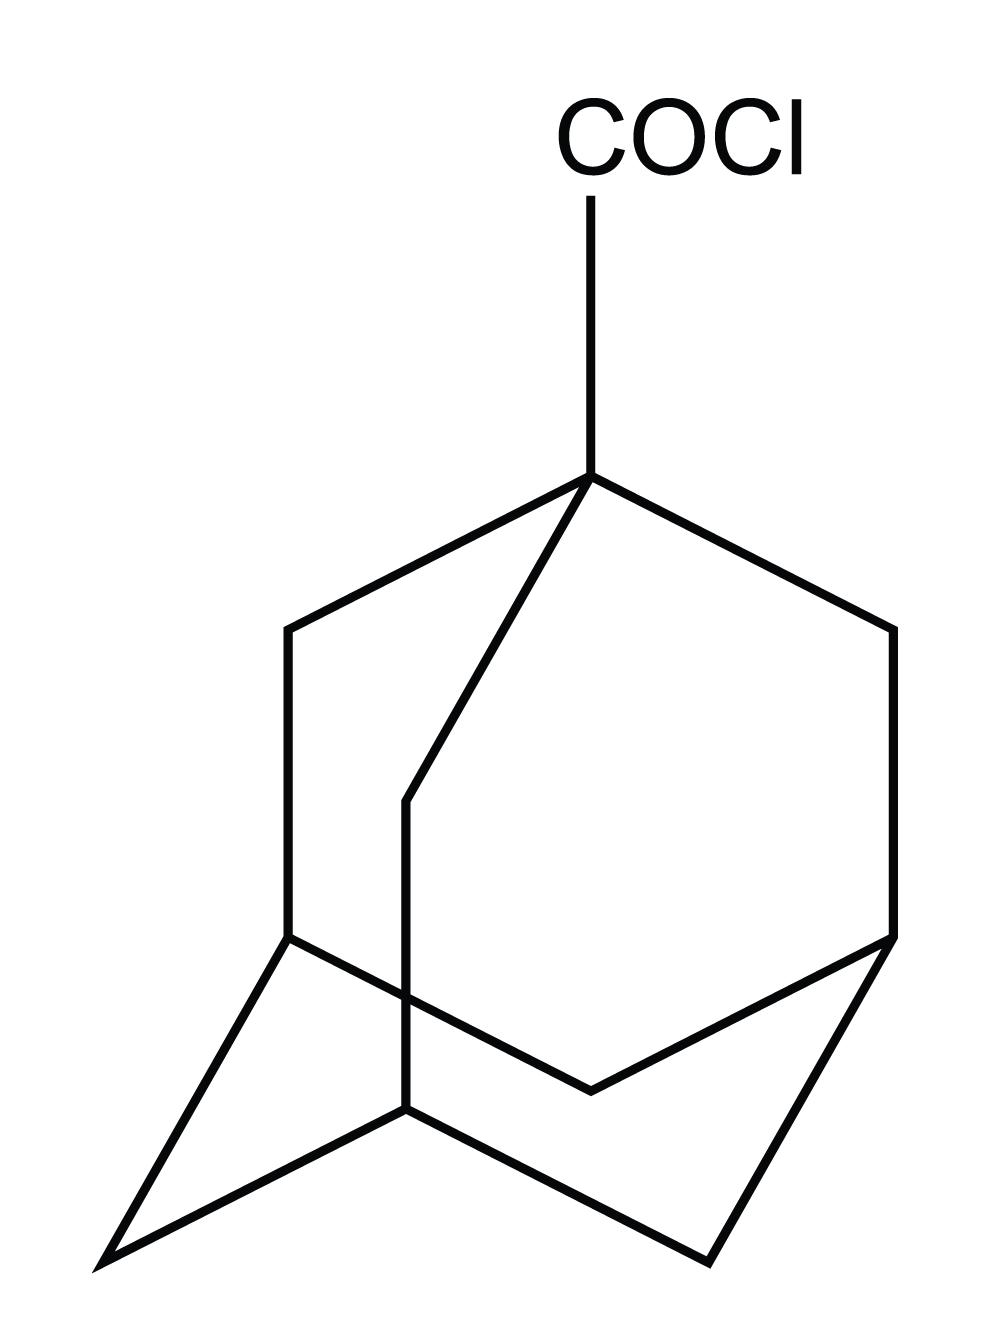 scheme:1-Adamantanecarboxylic acid chloride, Tricyclo[3,3,1,1(3,7)]decane-1-carboxylic acid chloride, Tricyclo[3,3,1,1(3,7)]decane-1-carbonyl chloride